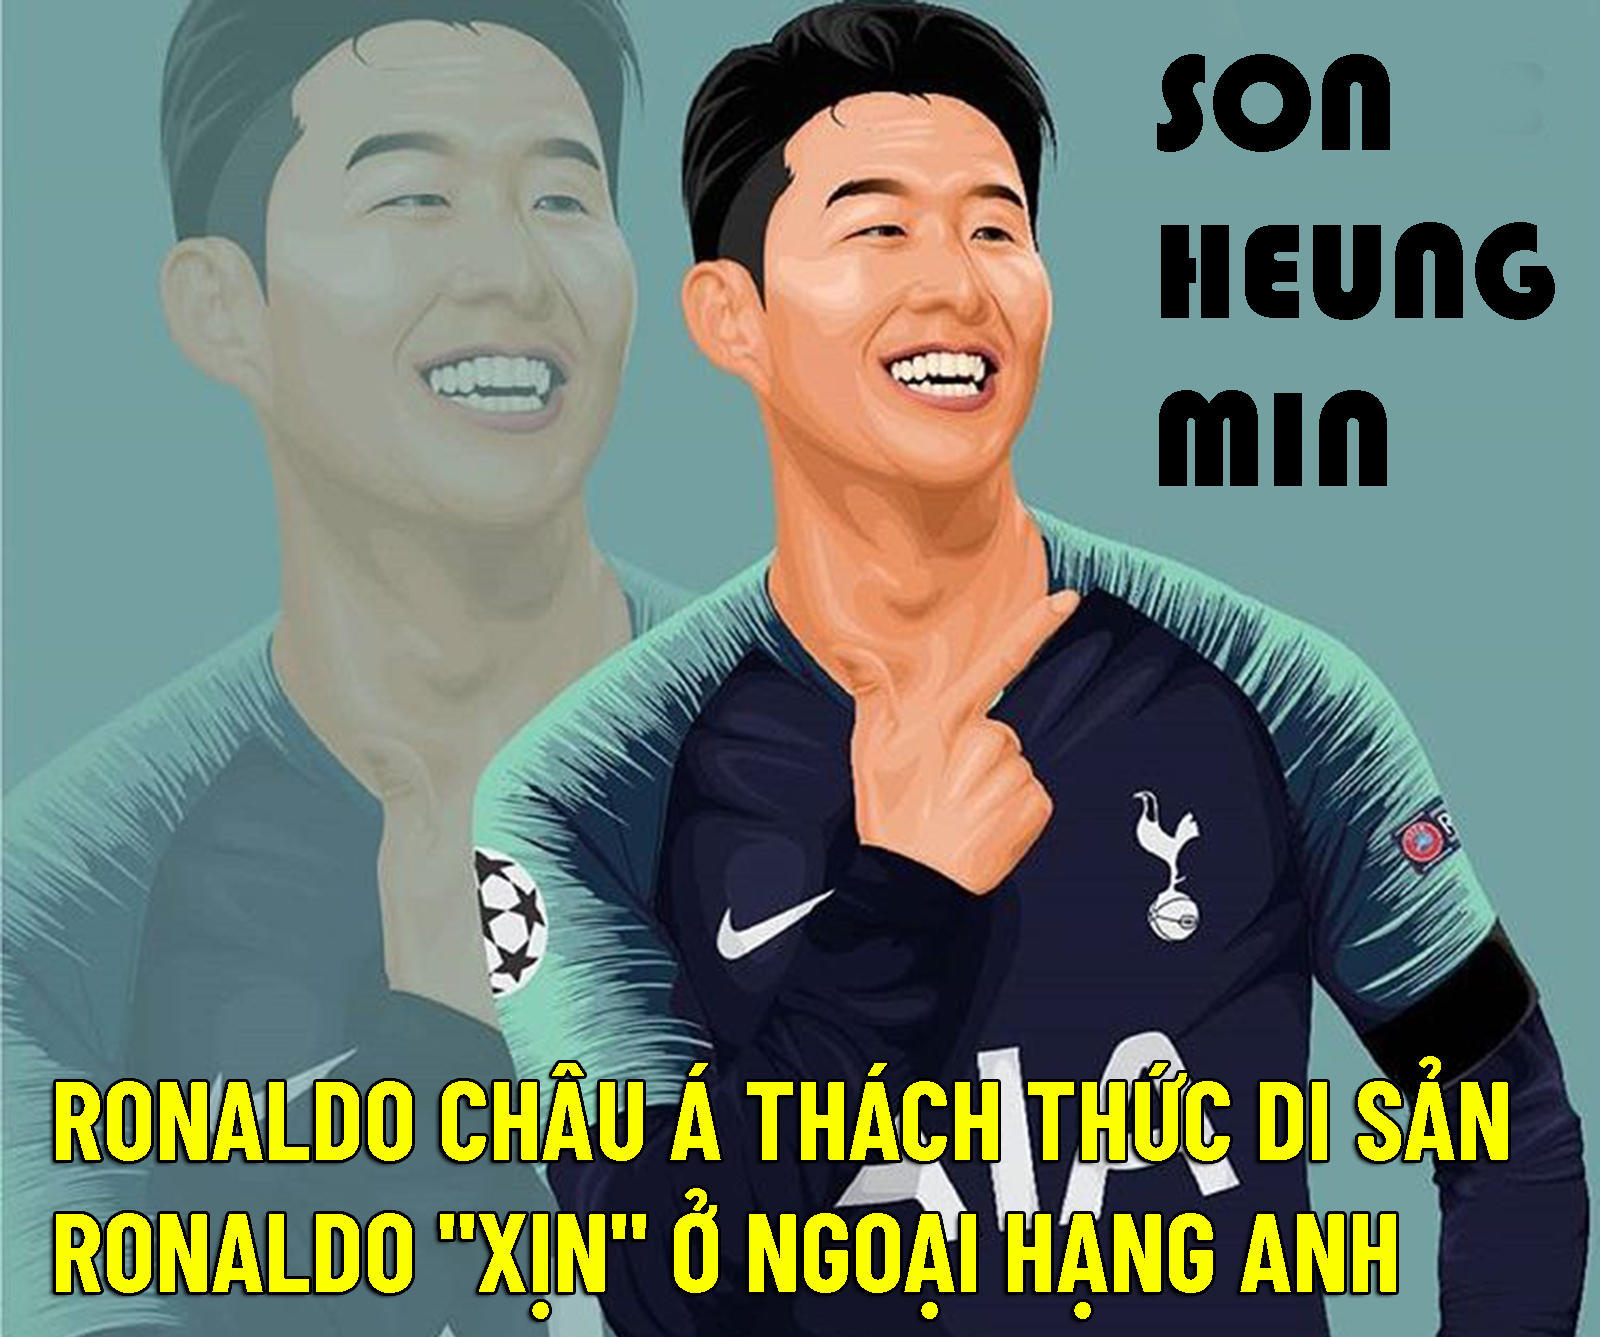 Son Heung Min: “Ronaldo châu Á” thách thức di sản Ronaldo “xịn” ở Ngoại hạng Anh - 1